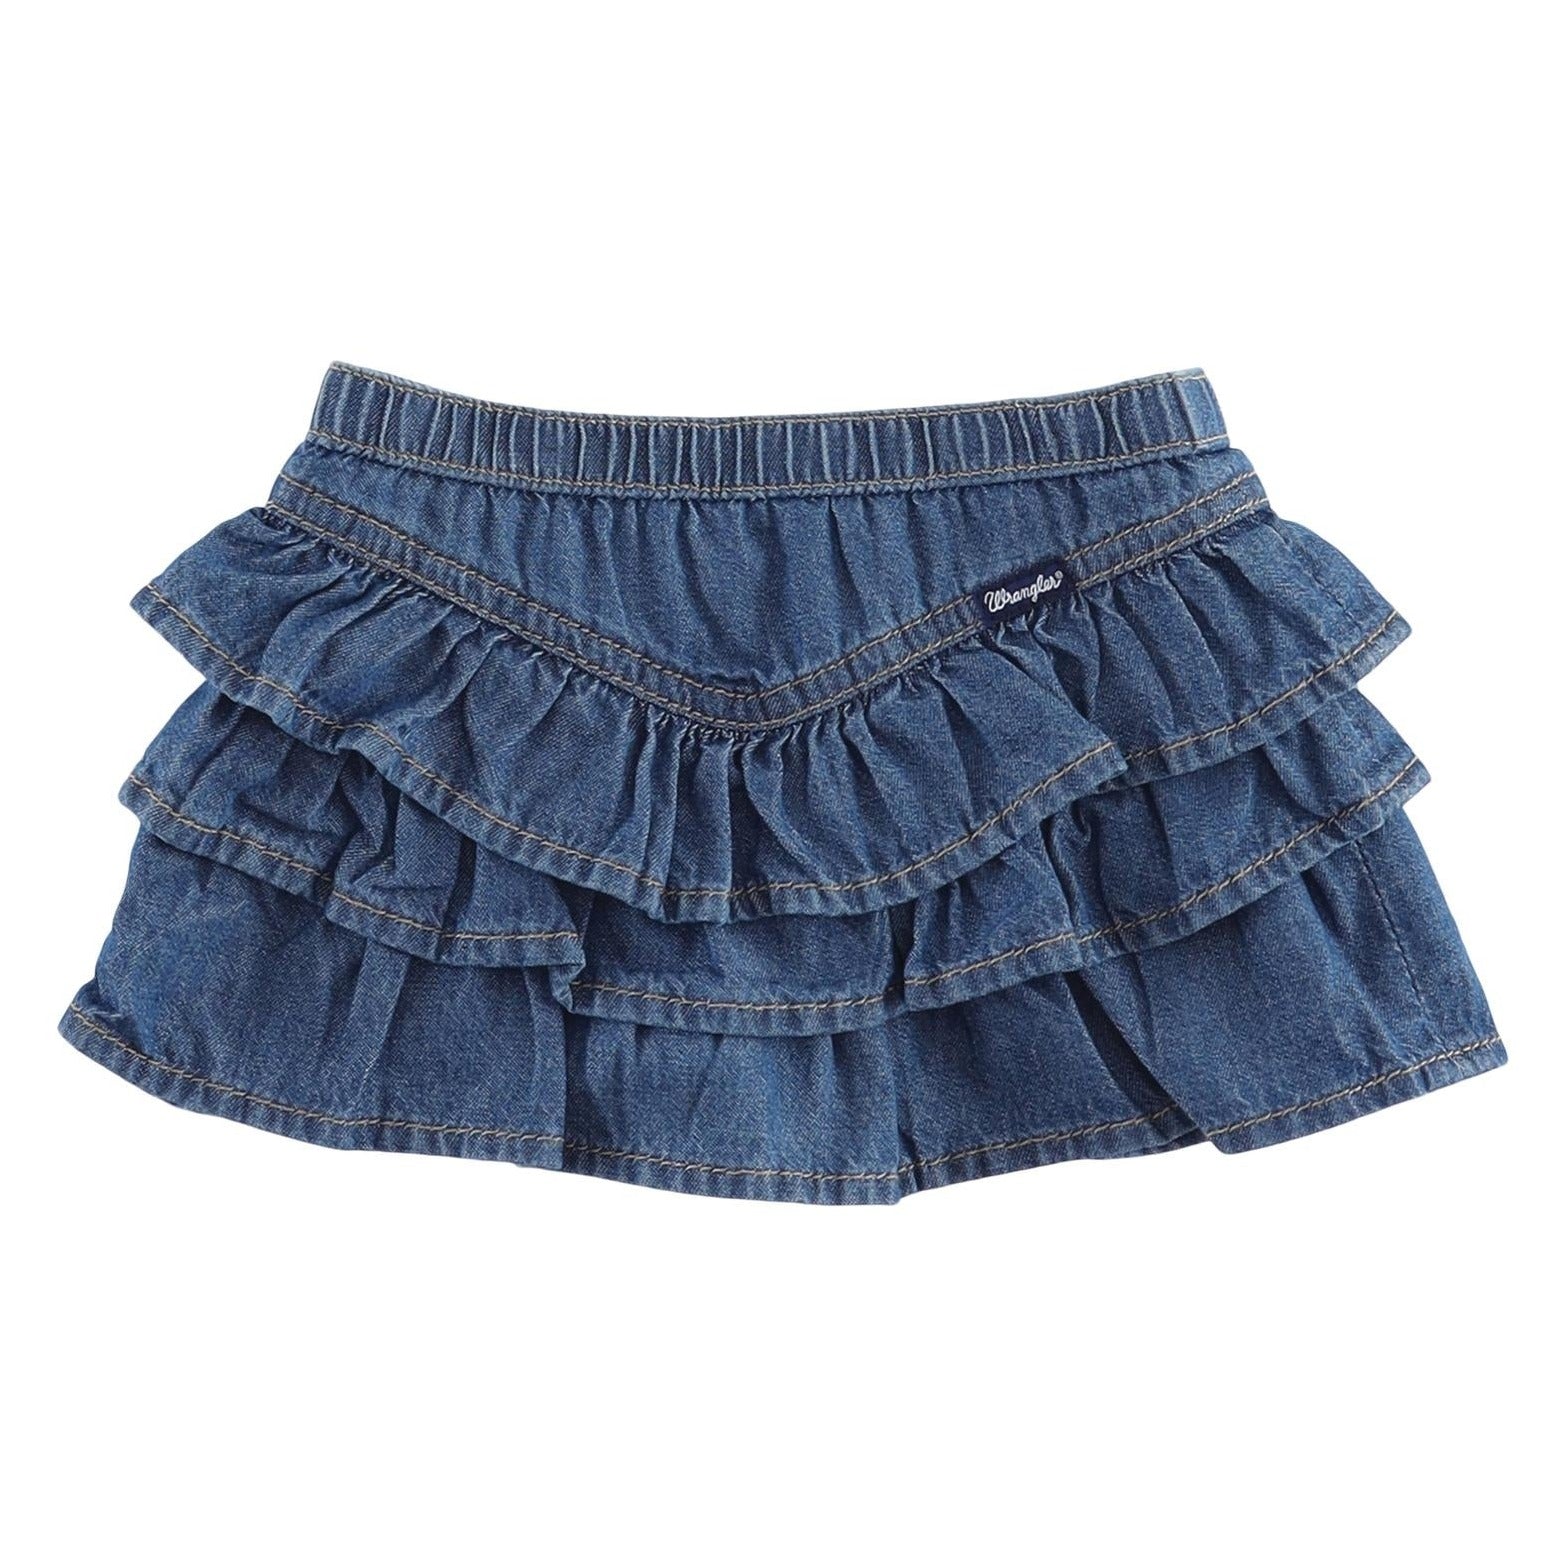 Girls skirt 2019 baby girl denim skirt toddler children denim skirt autumn  cute baby children kids